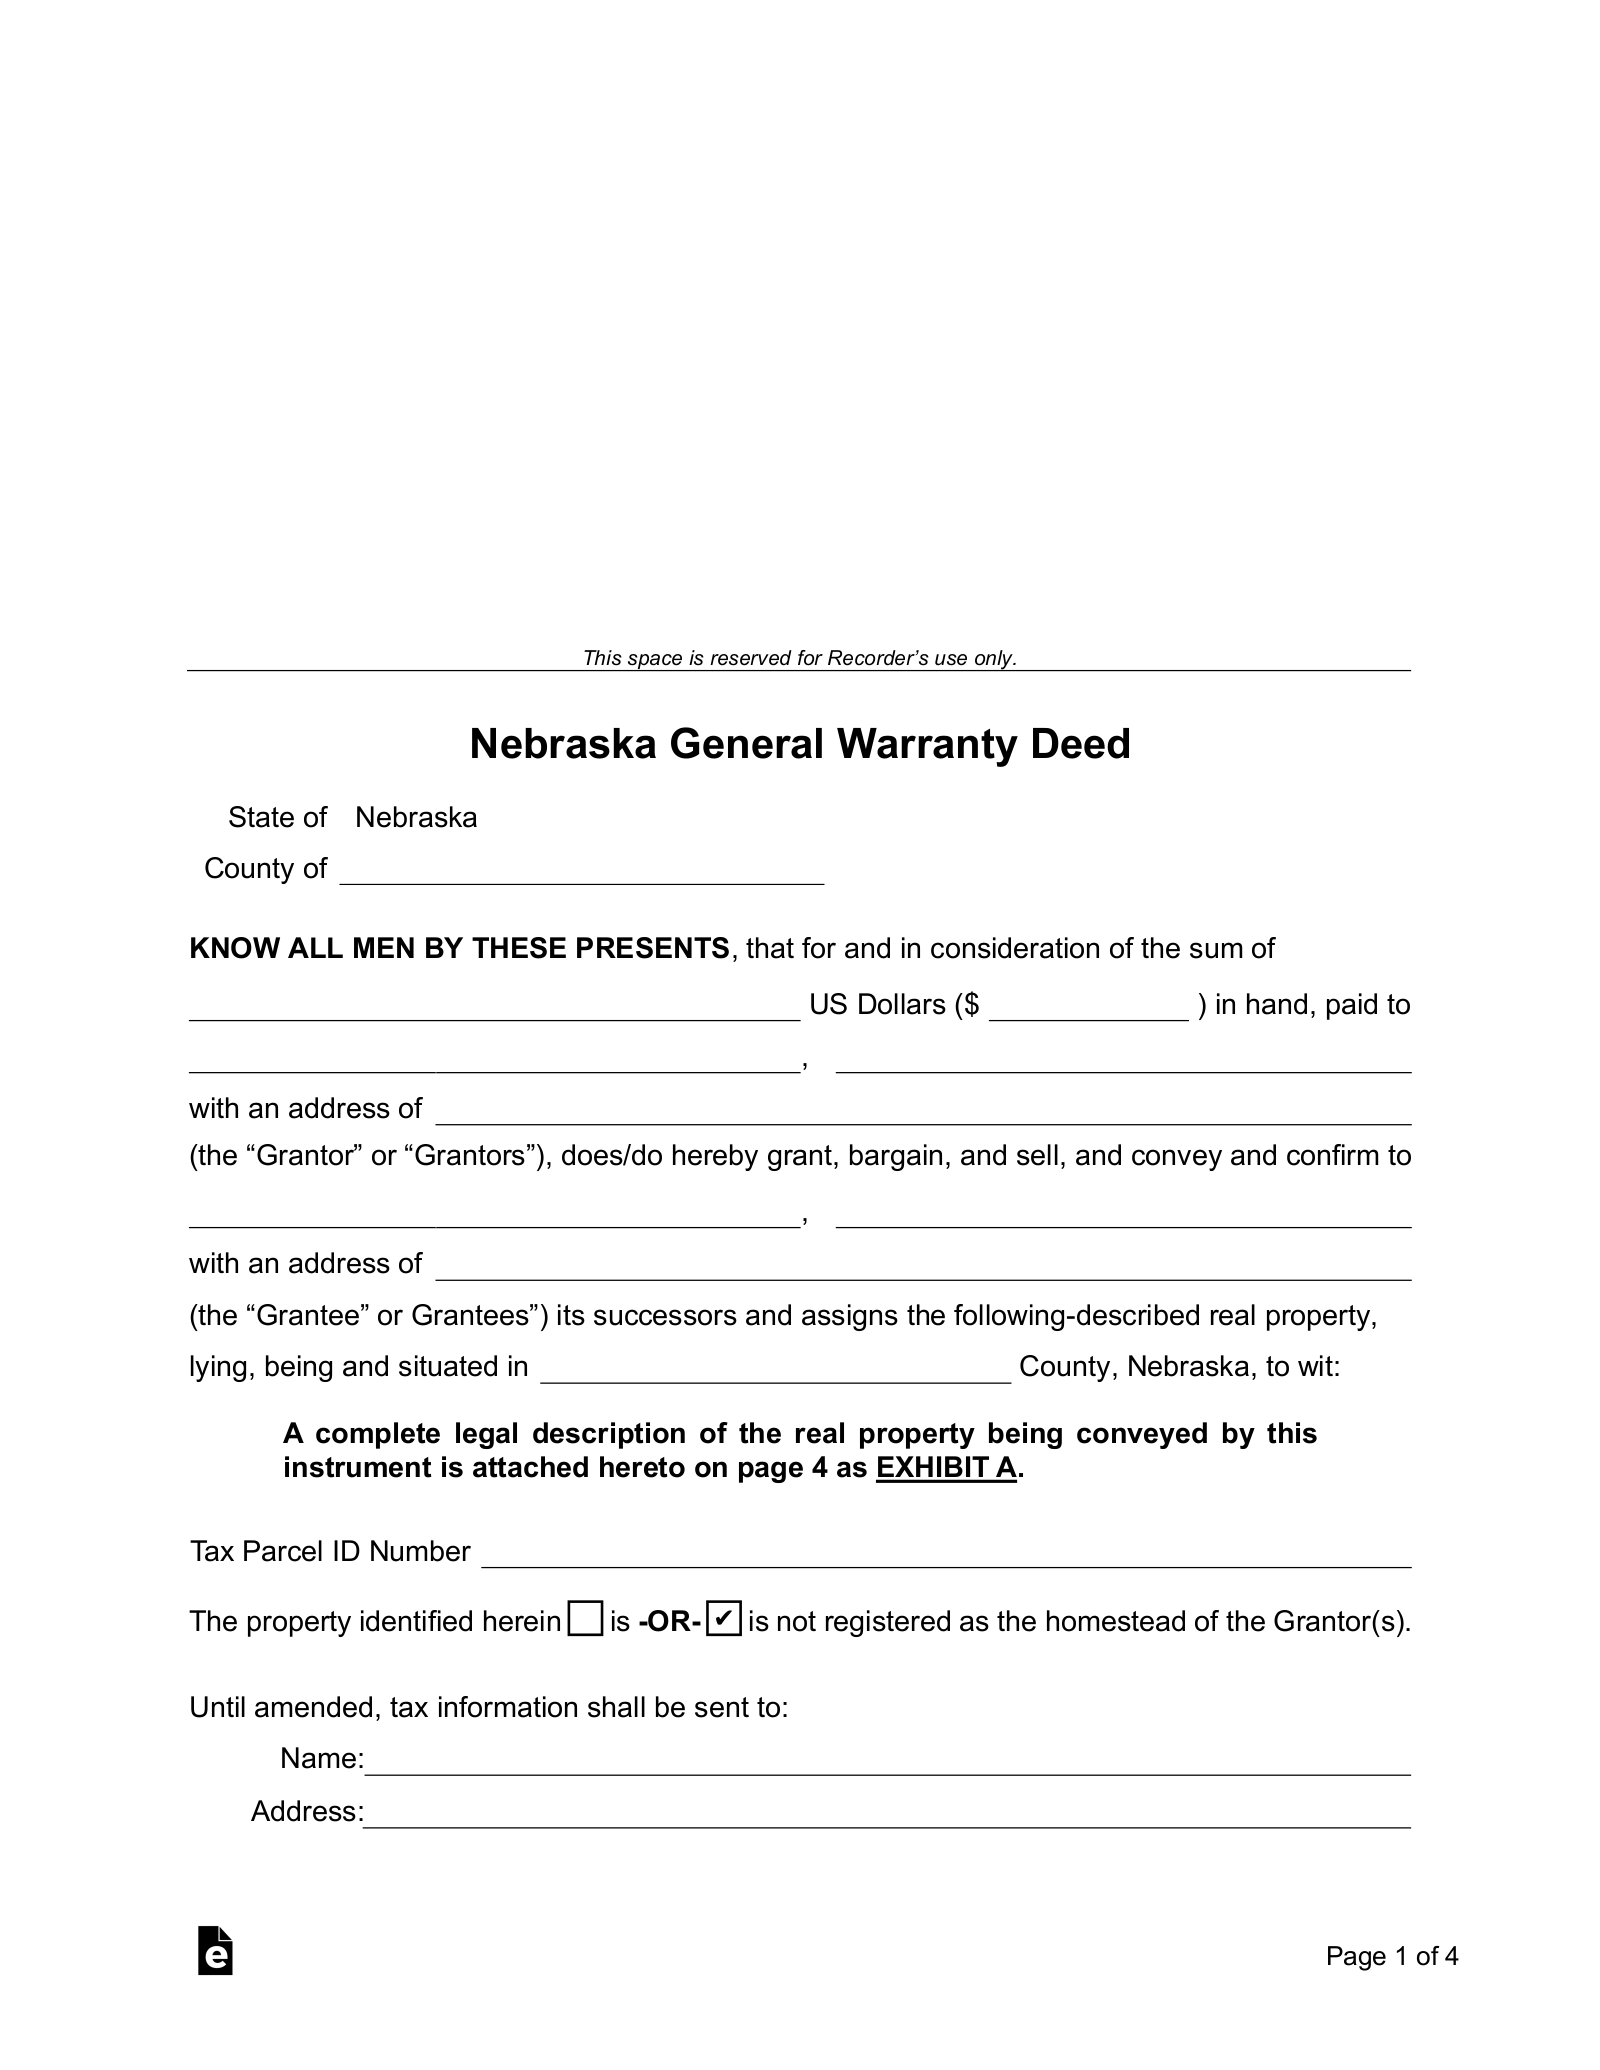 Nebraska General Warranty Deed Form